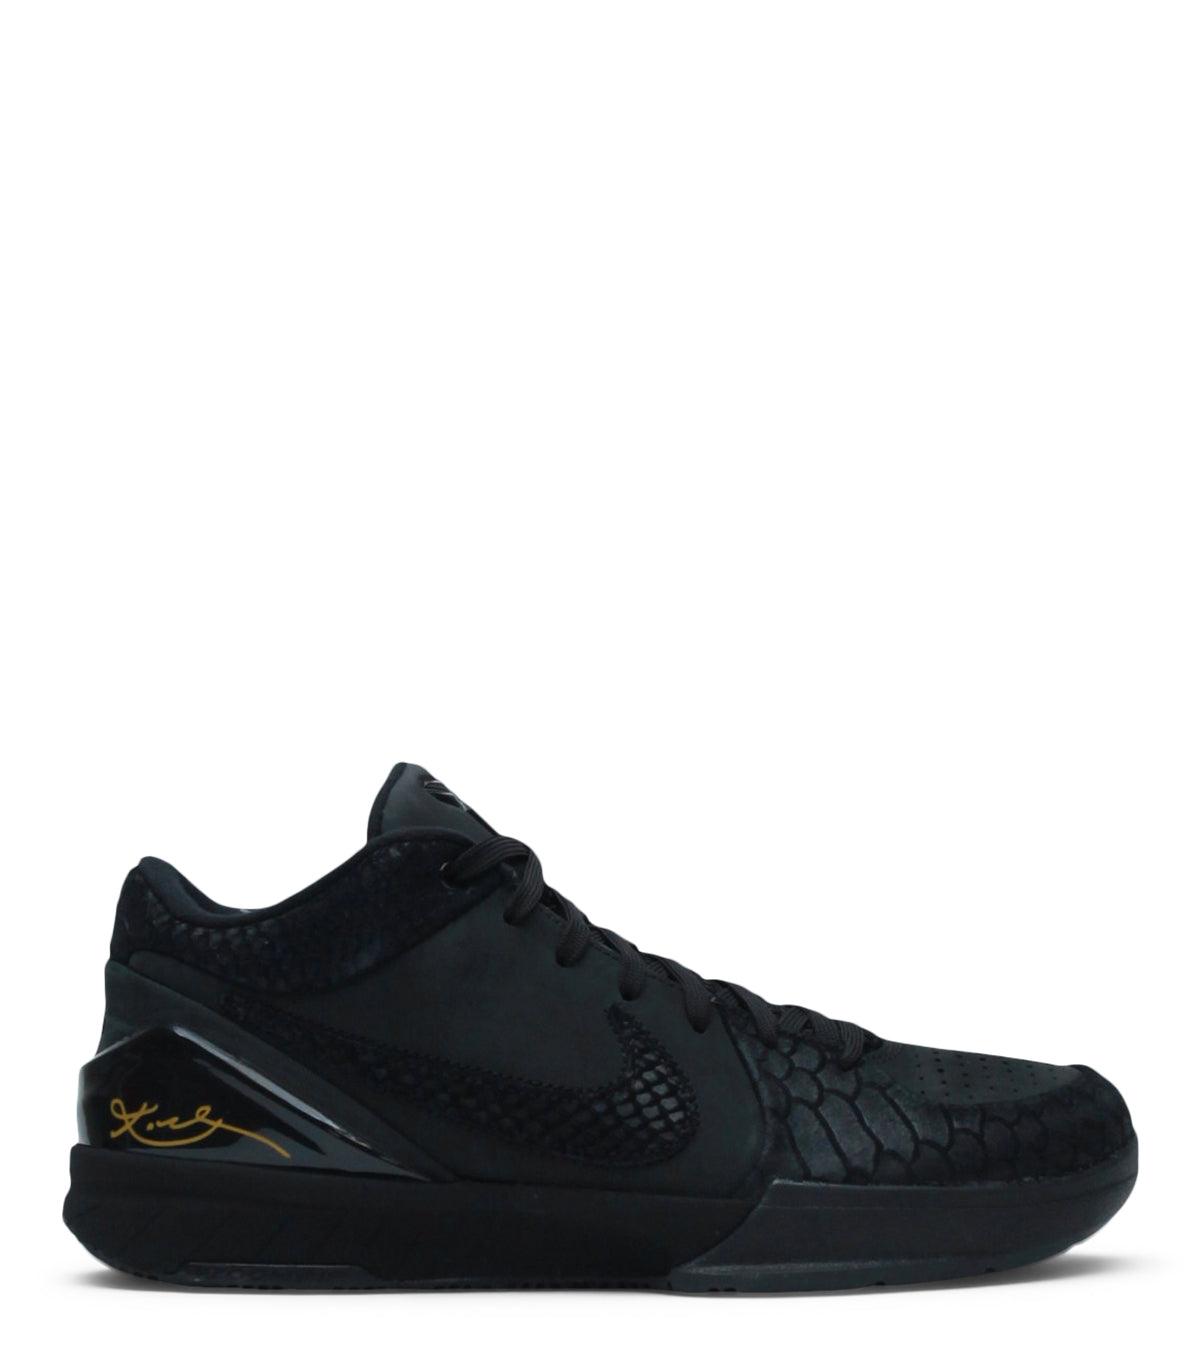 12.27.23 Nike Kobe IV Protro Black